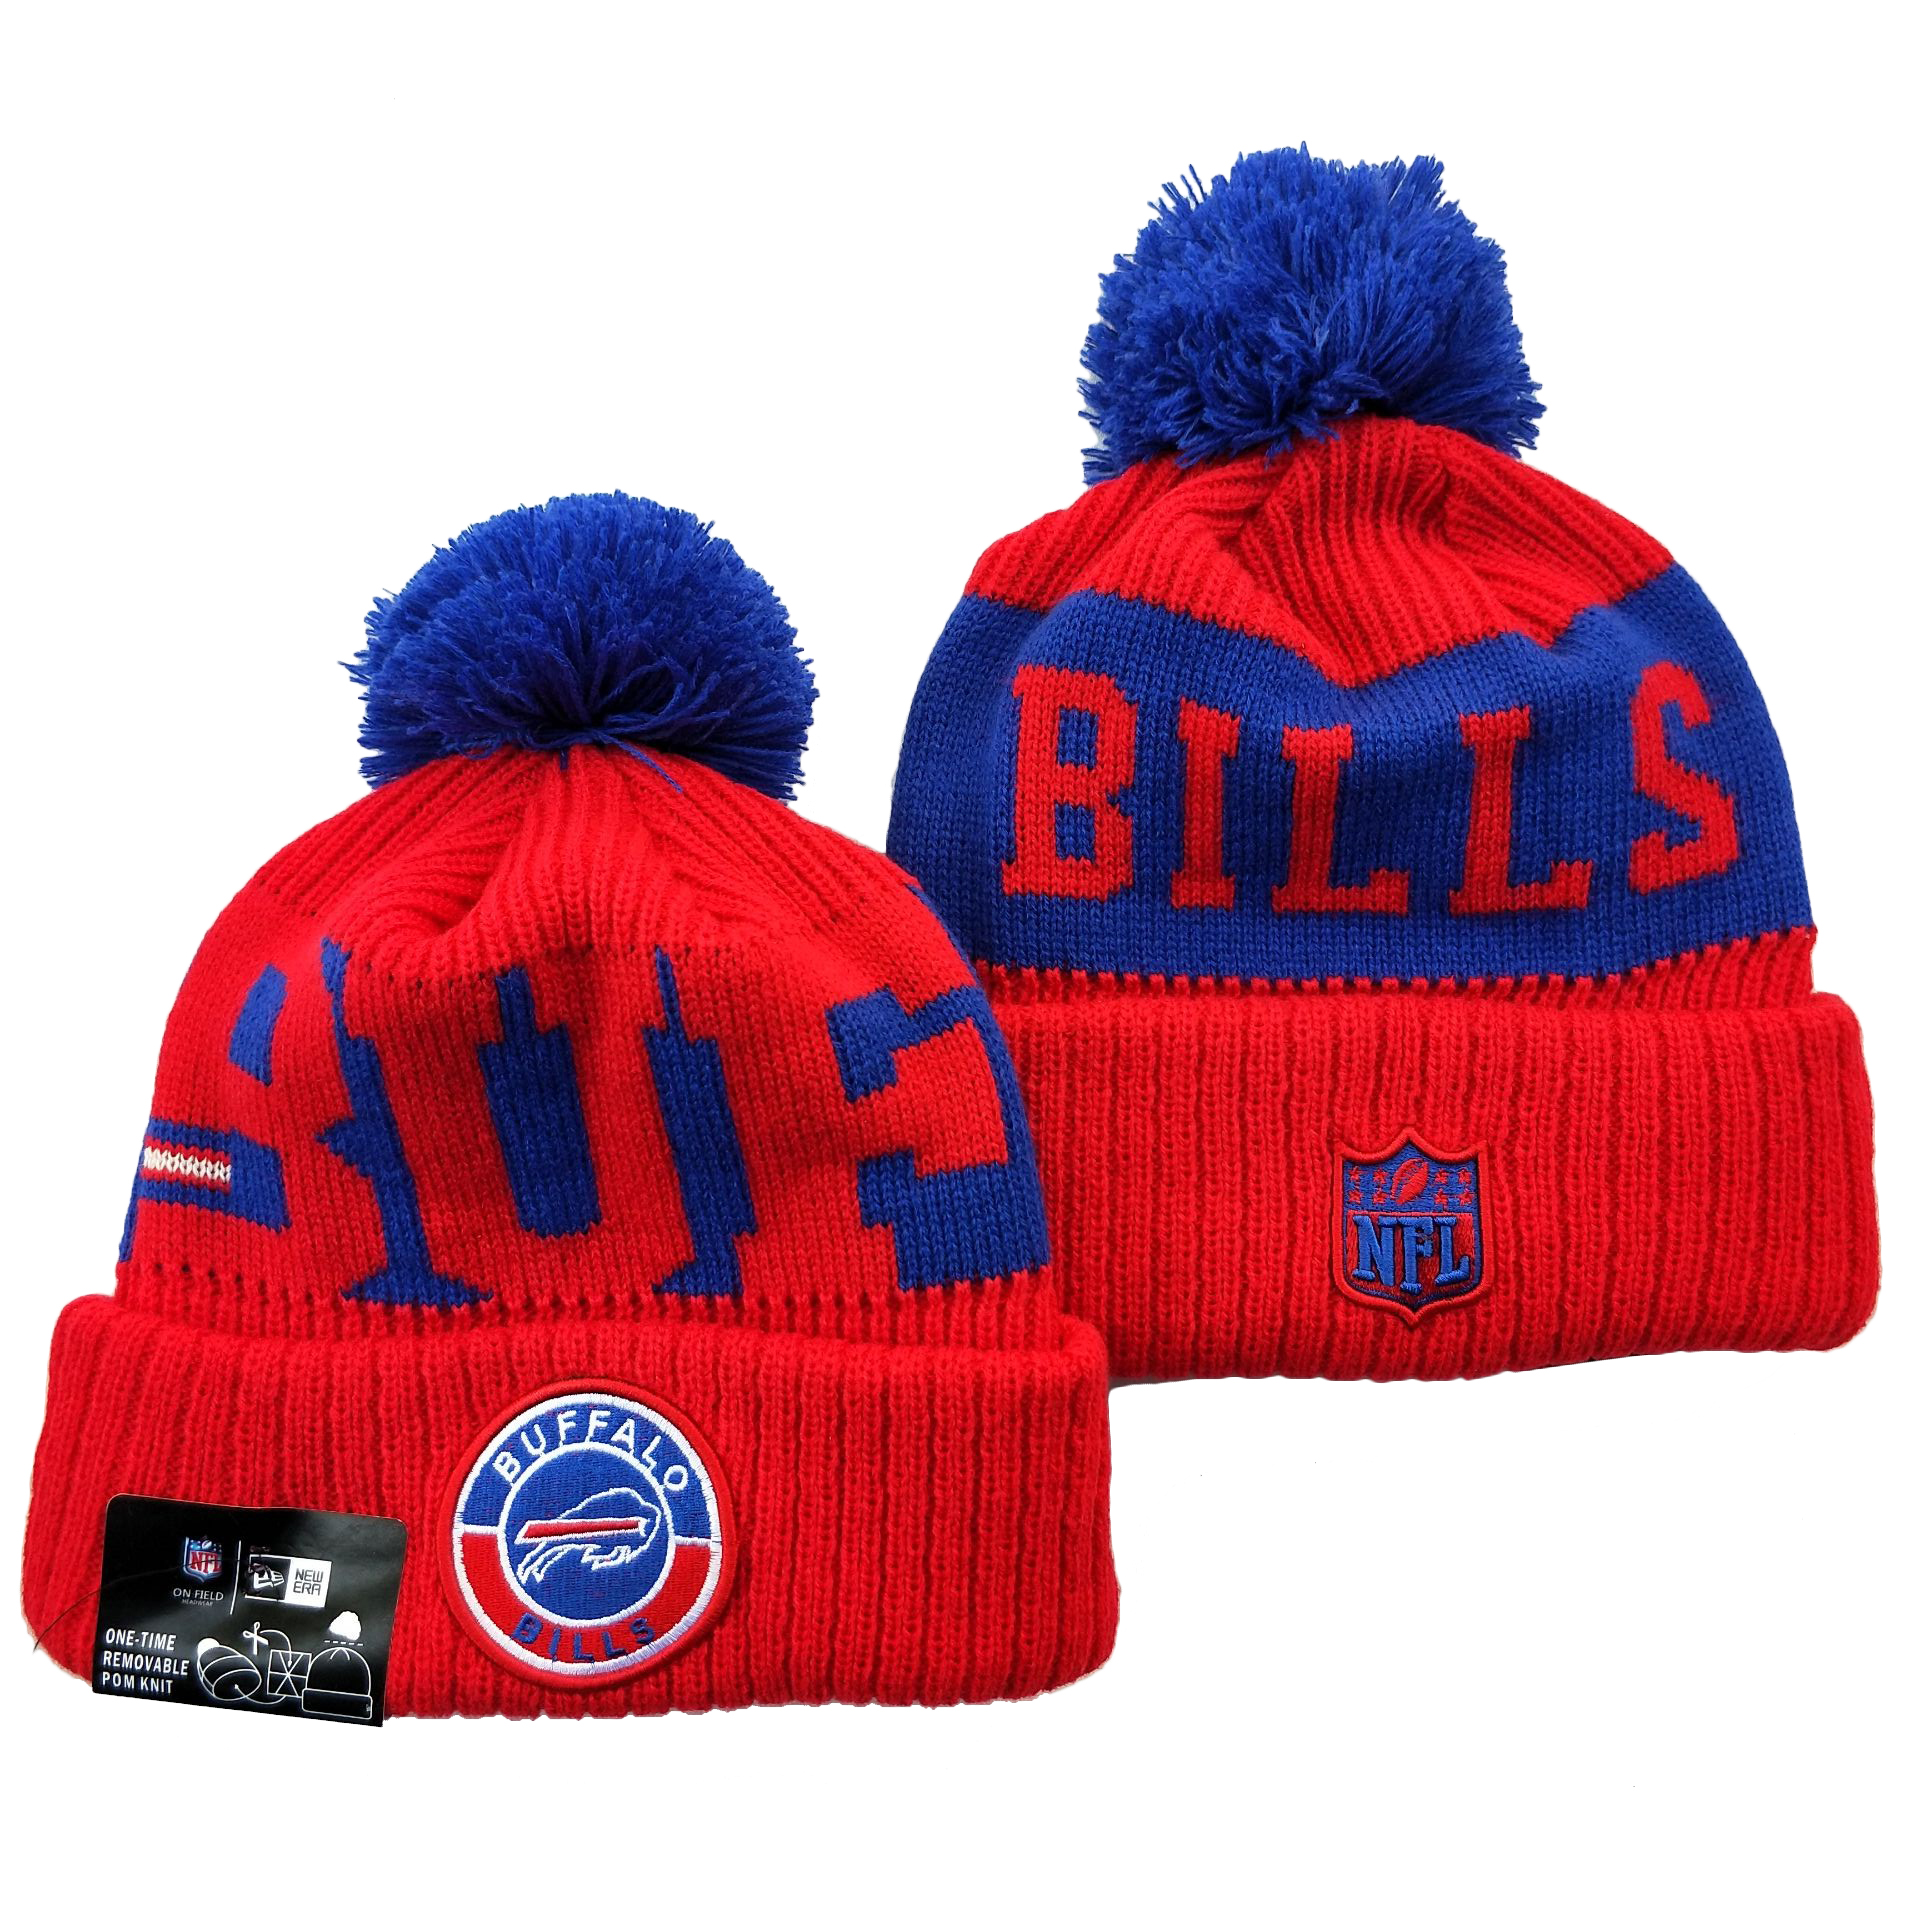 Bills Team Logo Red 2020 NFL Sideline Pom Cuffed Knit Hat YD